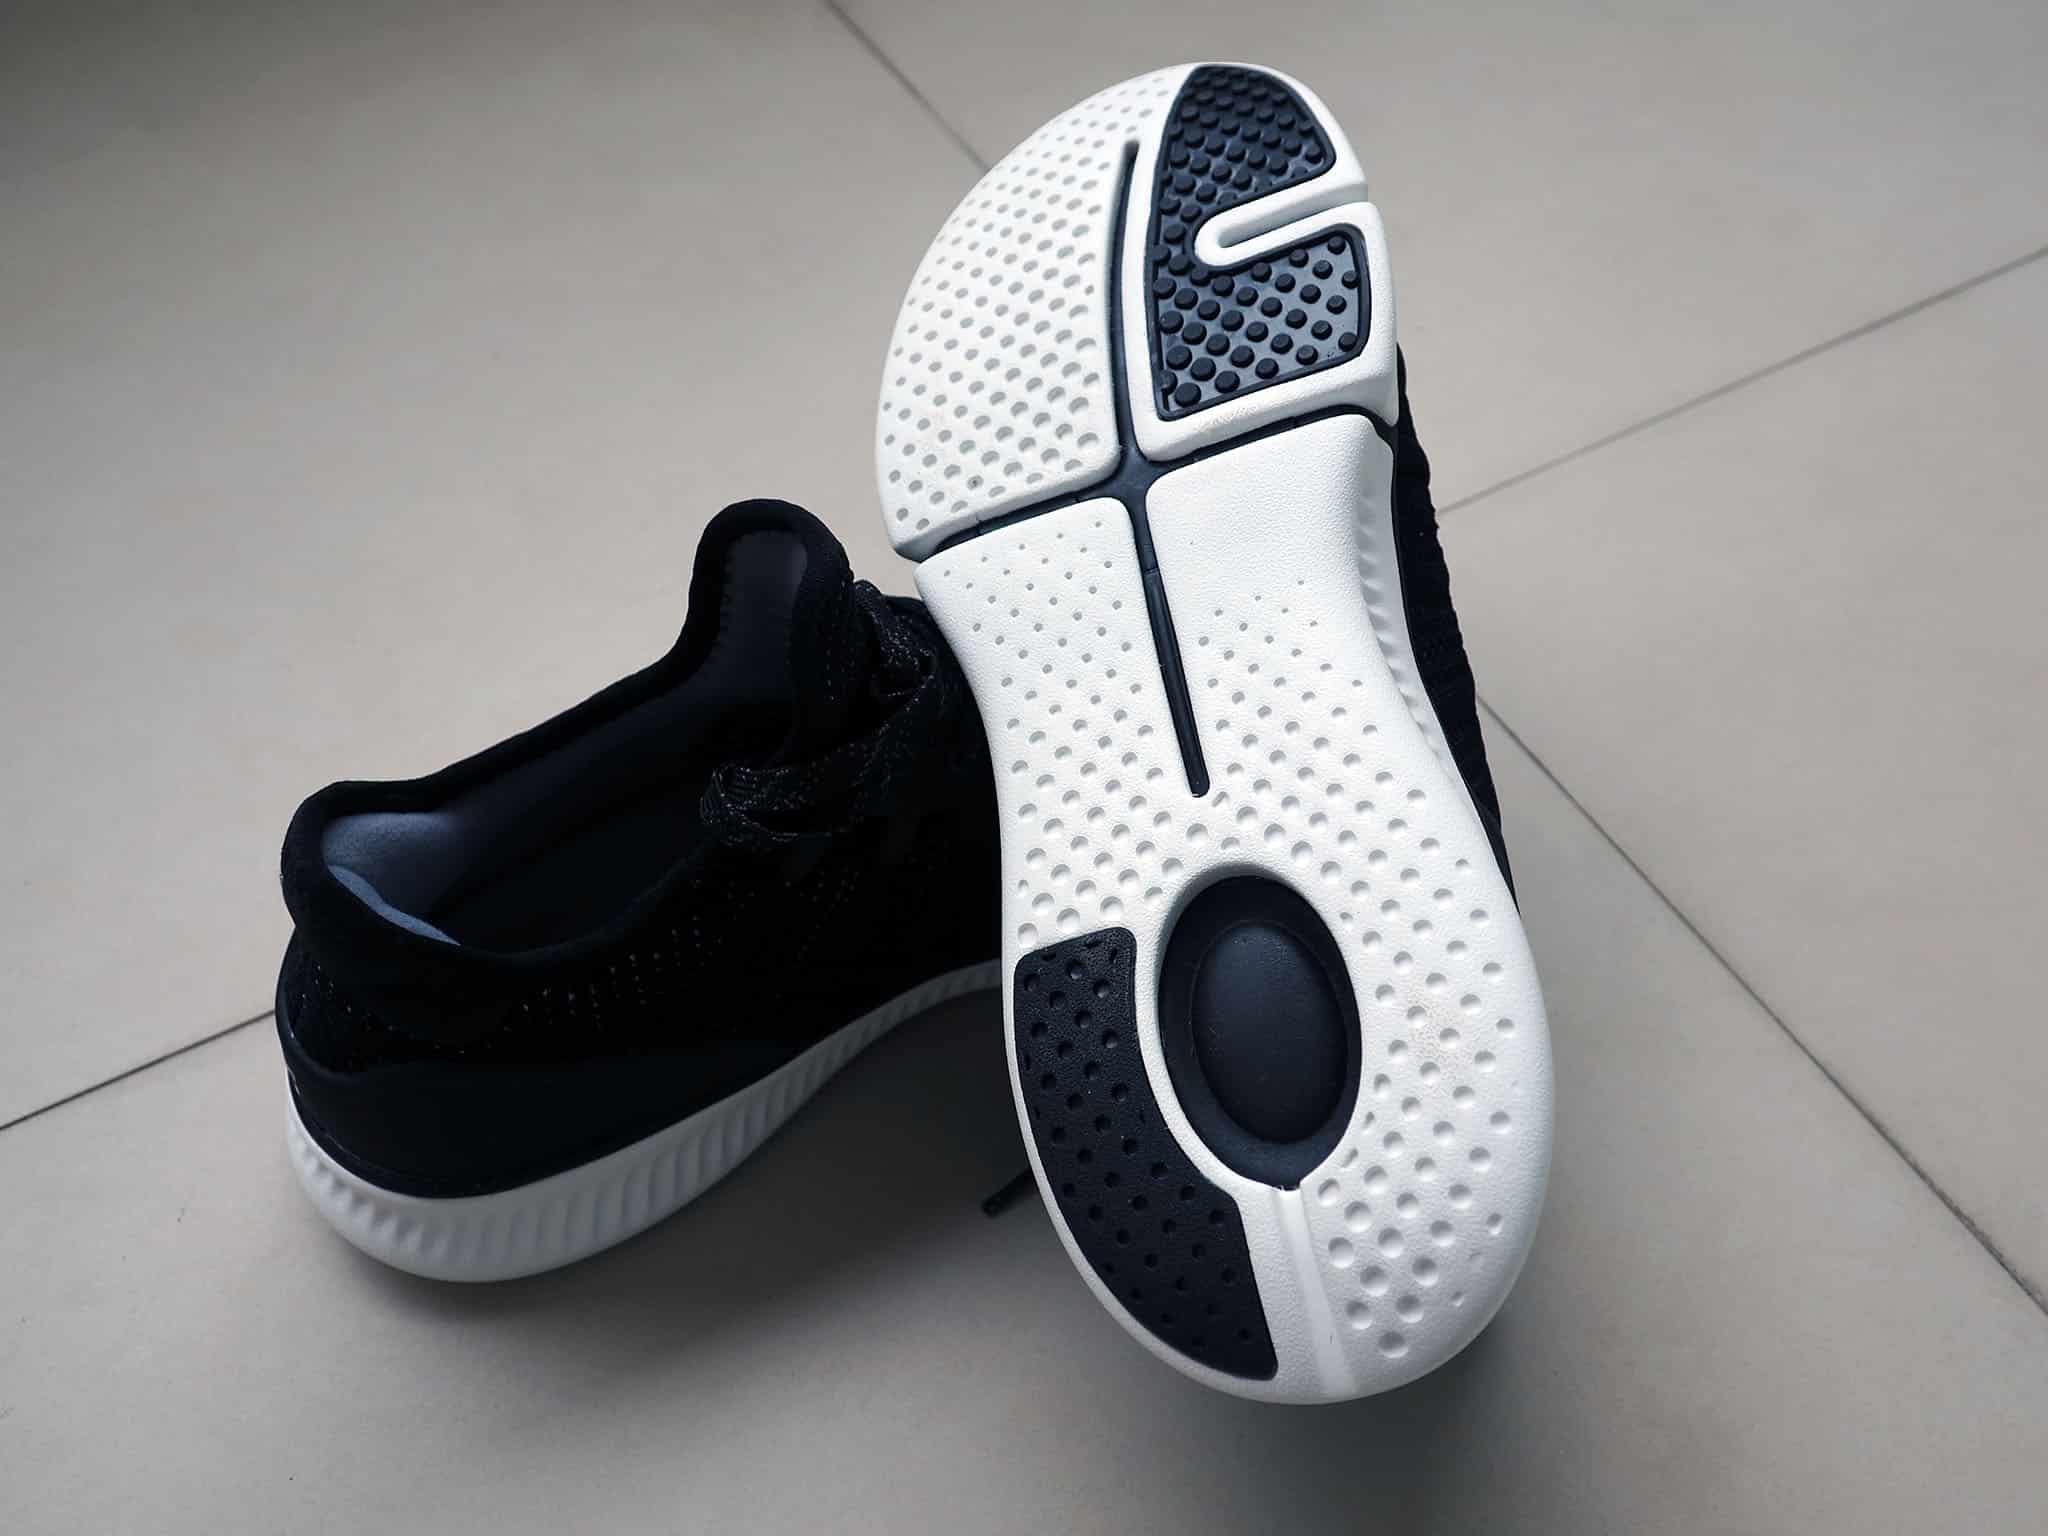 Xiaomi Mijia Smart Shoes